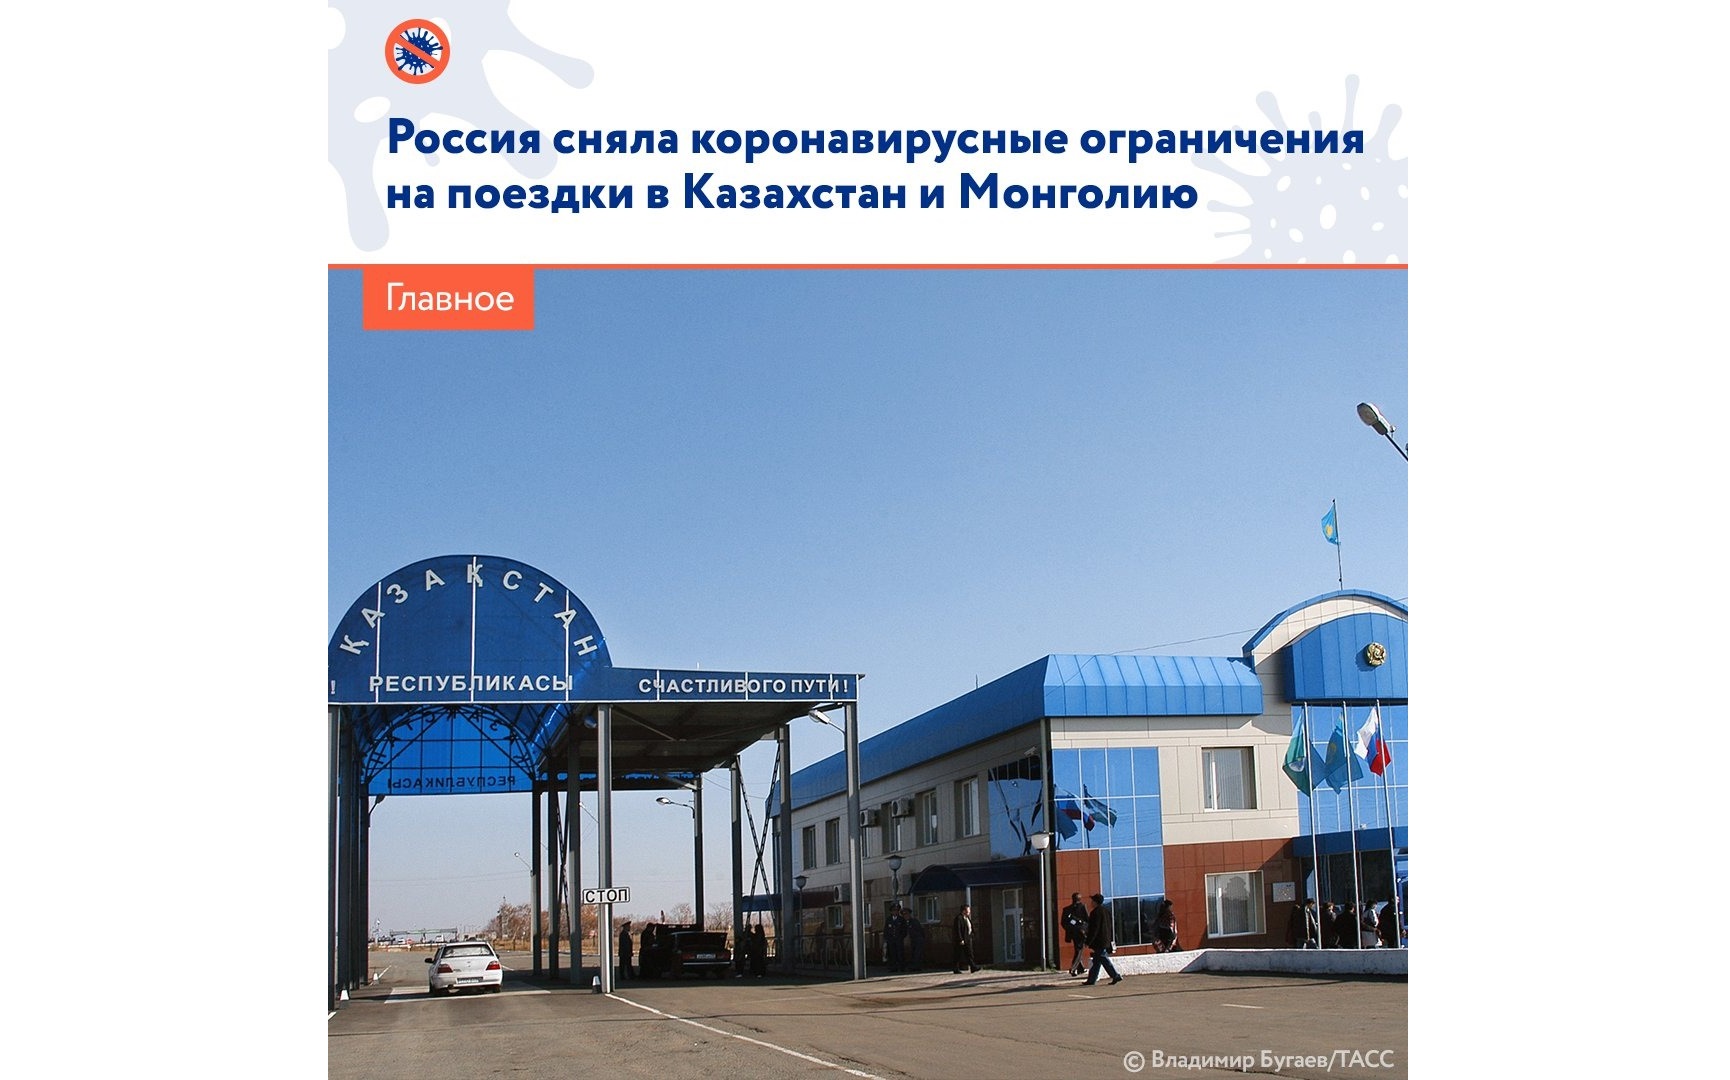 Россия 30 марта сняла ограничения на пересечение границ с Казахстаном и Монголией по суше, введённые два года назад из-за пандемии коронавируса..